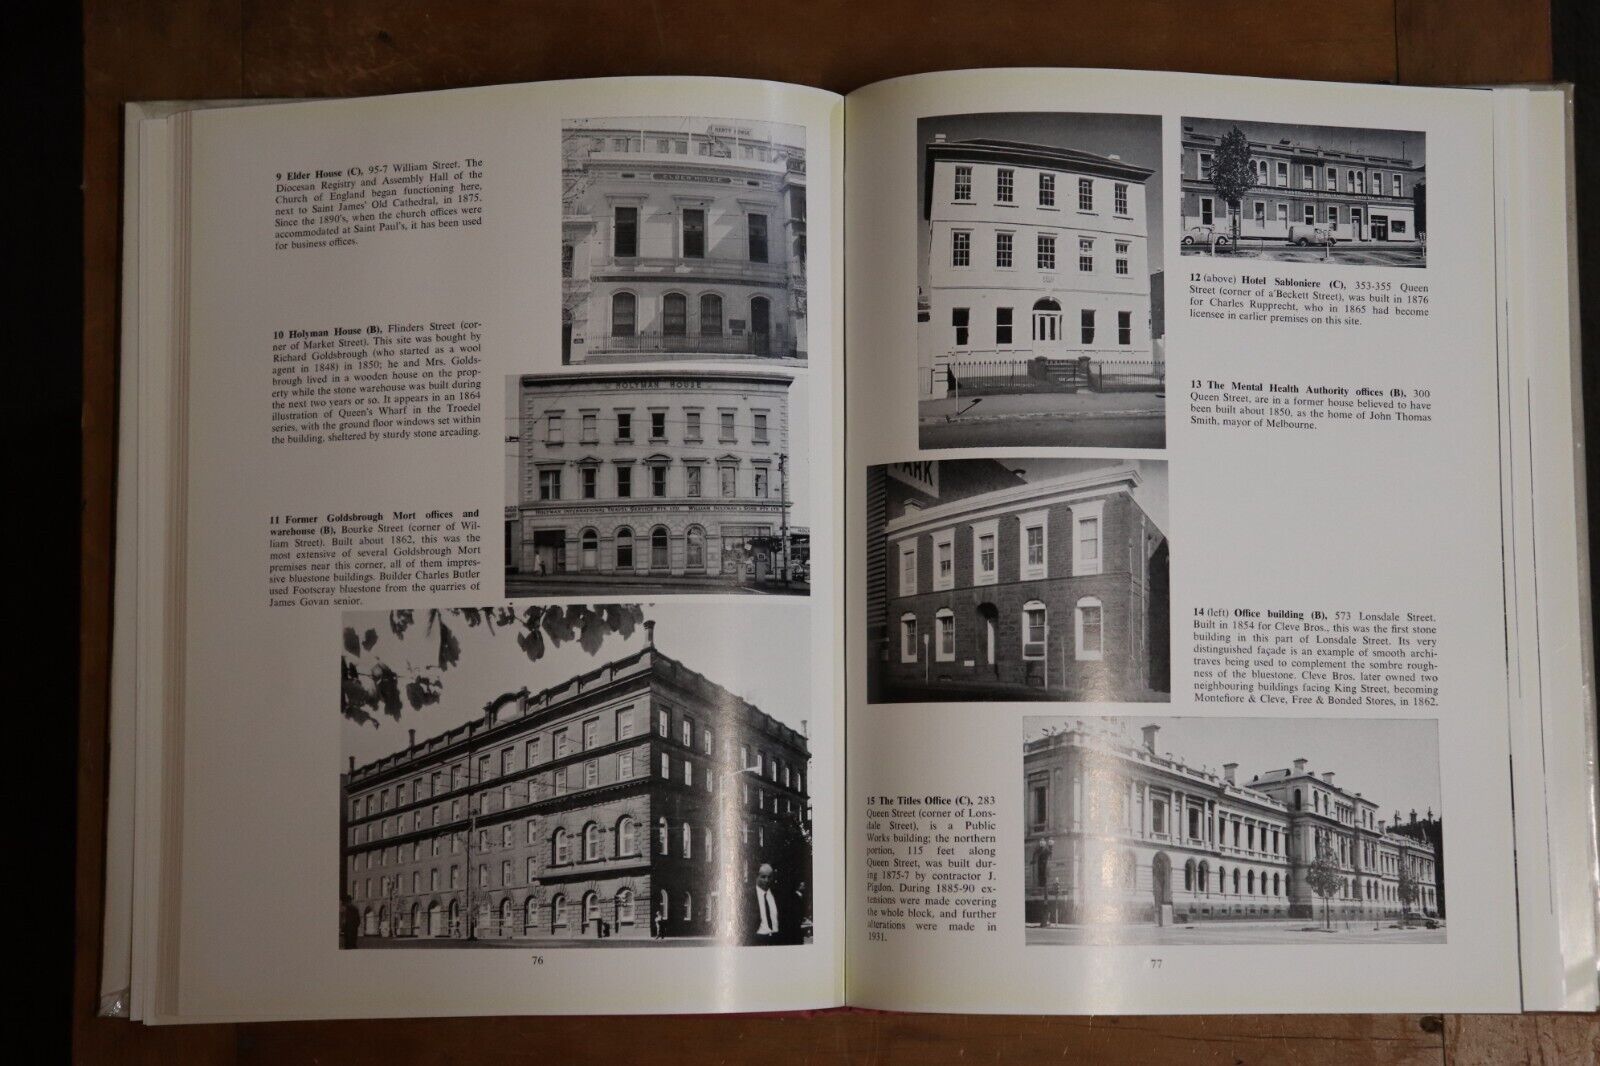 Historic Building of Victoria - 1966 - 1st Edition Australian Architecture Book